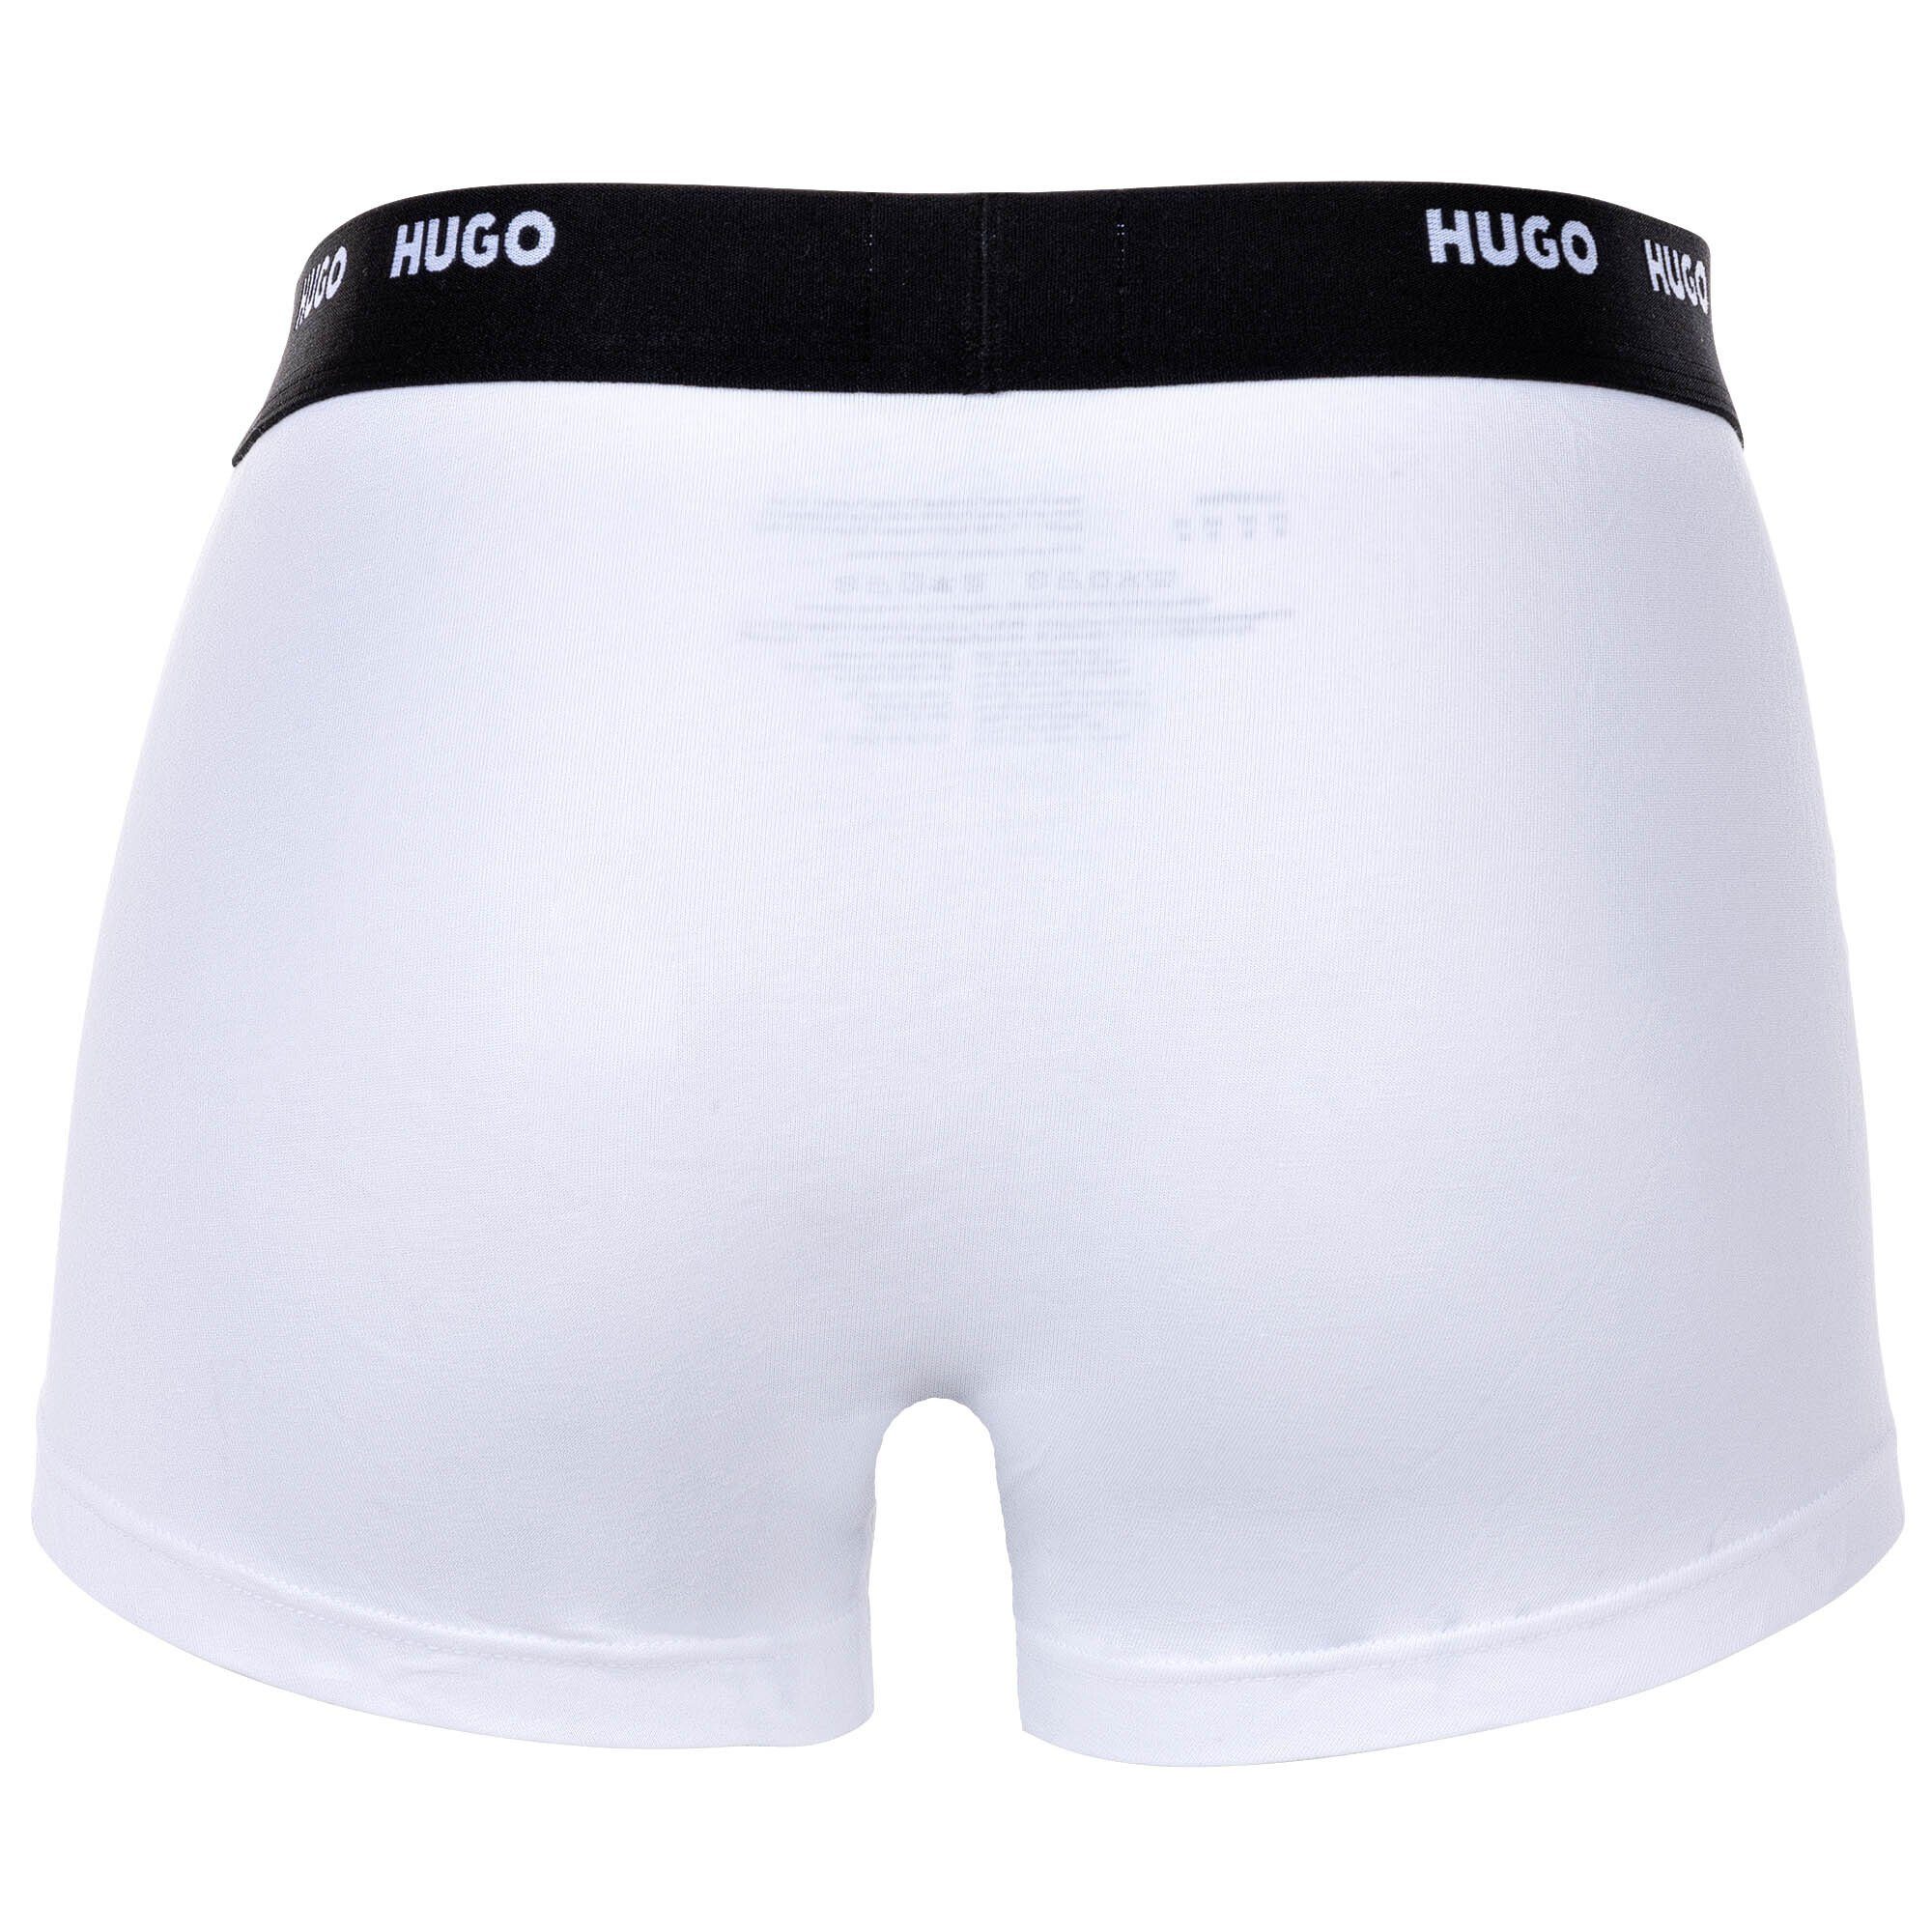 HUGO Boxer Five Shorts, 5er - Pack Herren Trunks Schwarz/Grün/Rot Boxer Pack